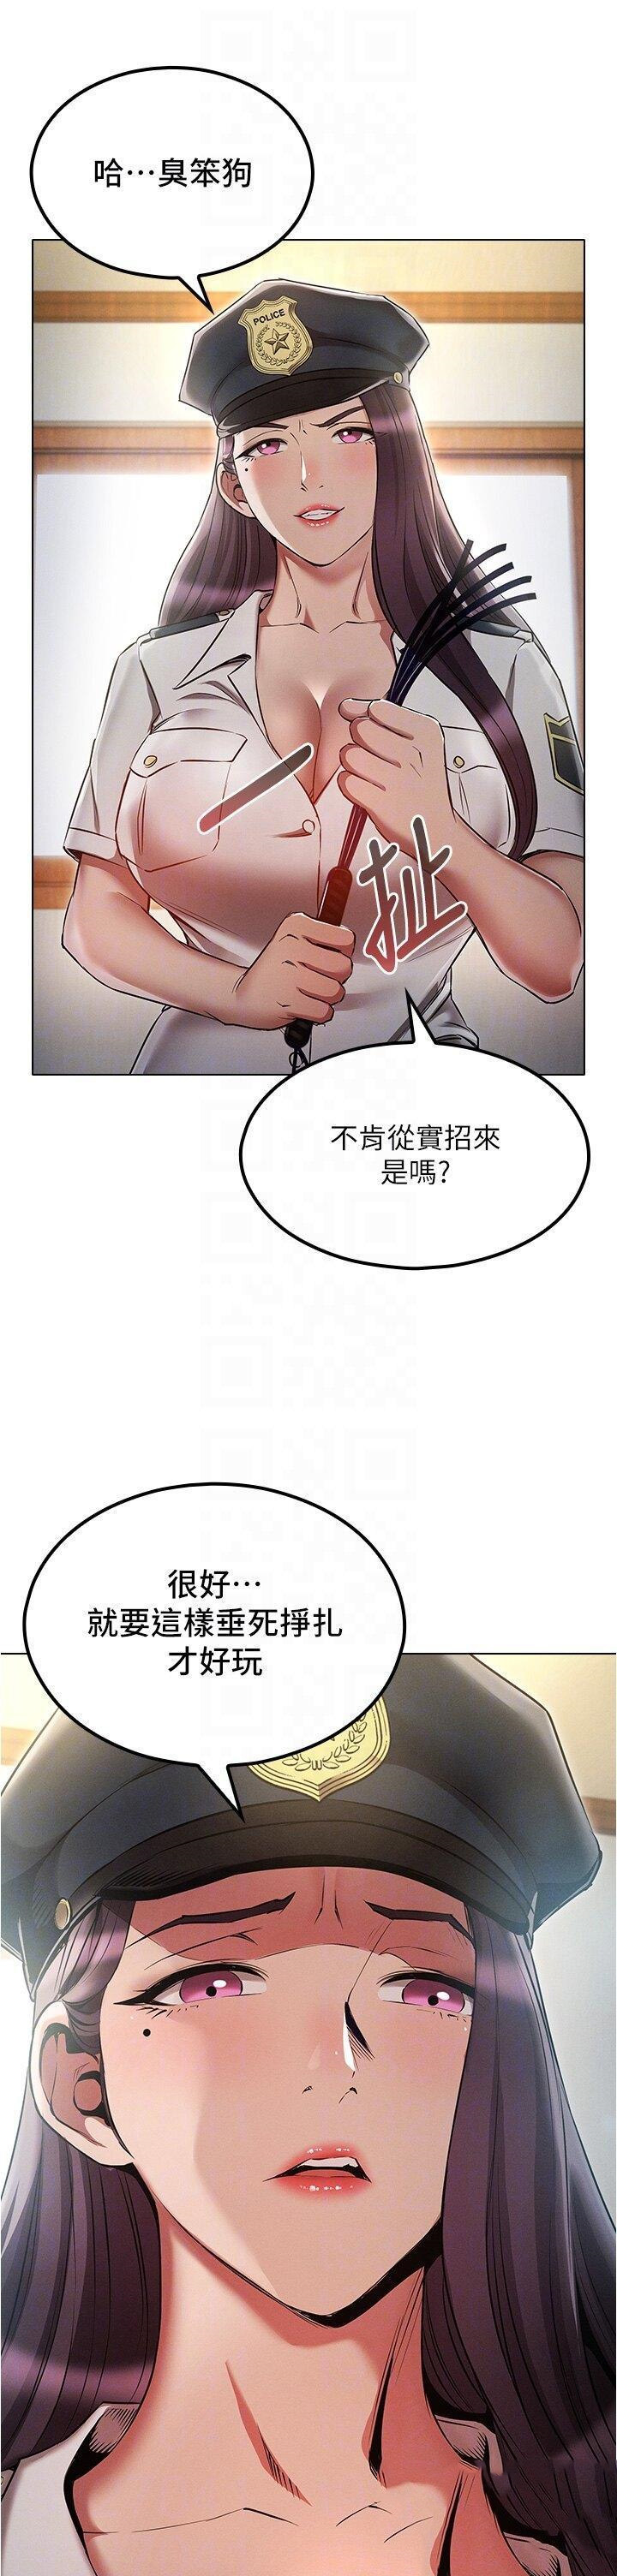 韩国污漫画 魯蛇的多重宇宙 第54话 做错事就要受罚 26